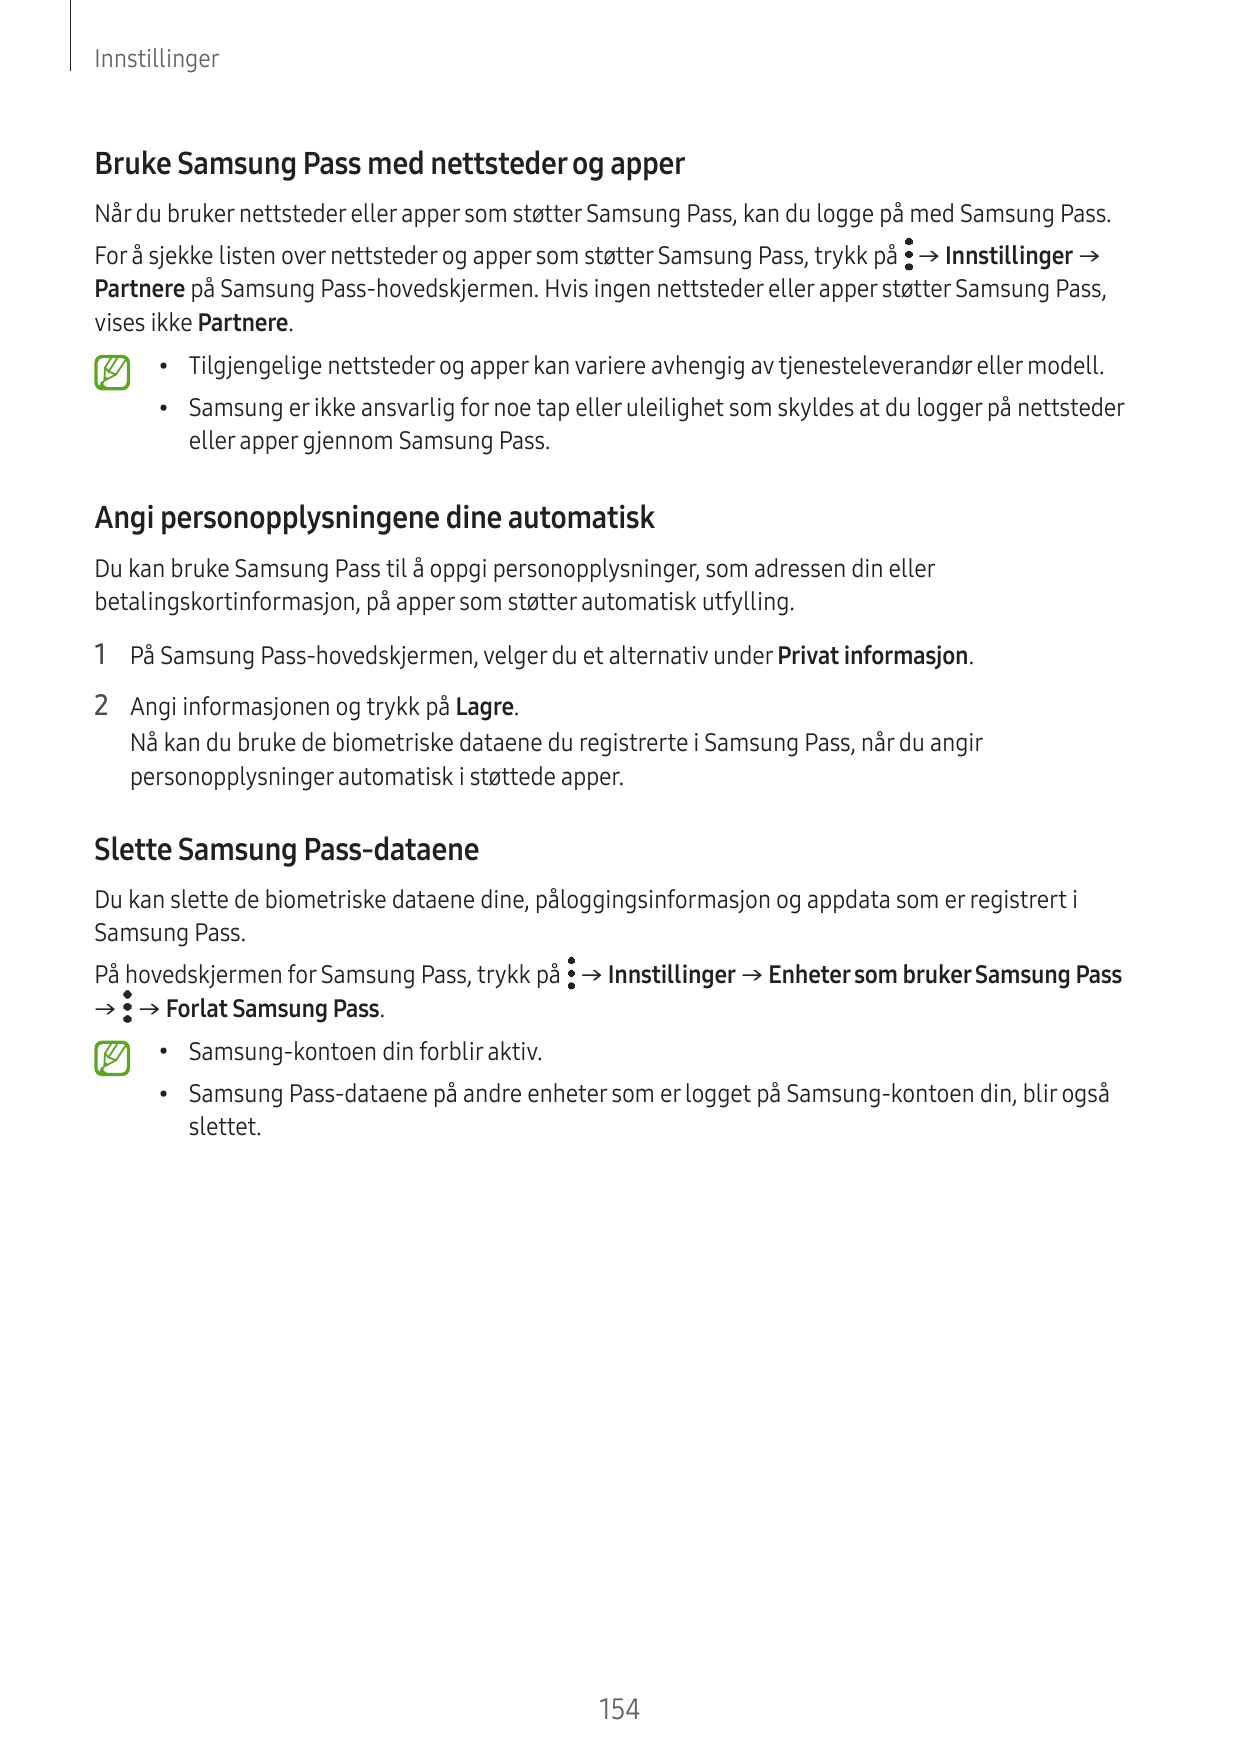 InnstillingerBruke Samsung Pass med nettsteder og apperNår du bruker nettsteder eller apper som støtter Samsung Pass, kan du log